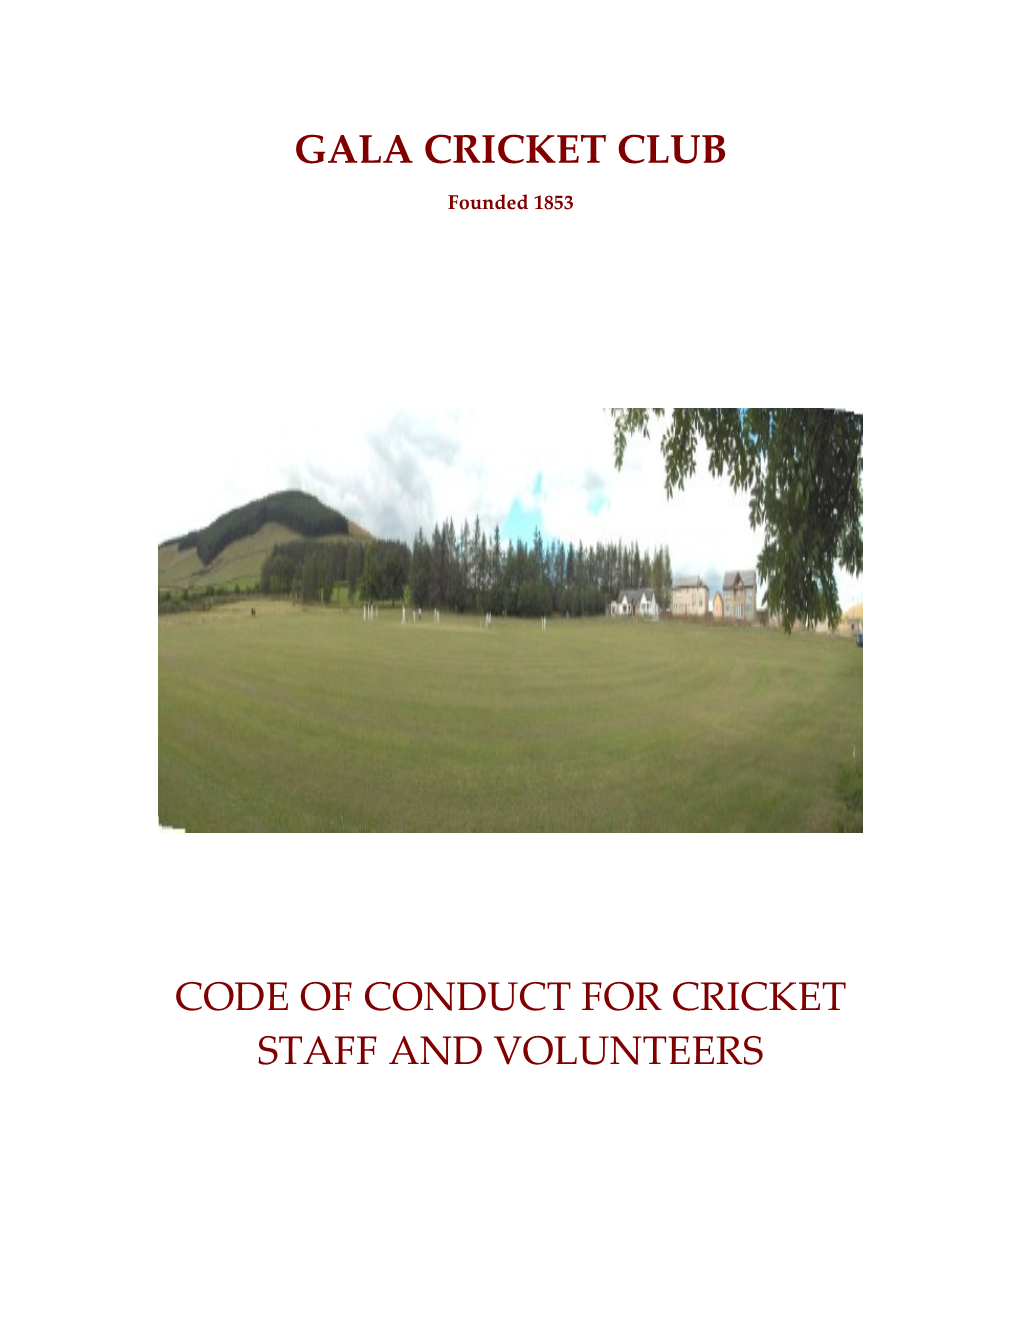 Gala Cricket Club